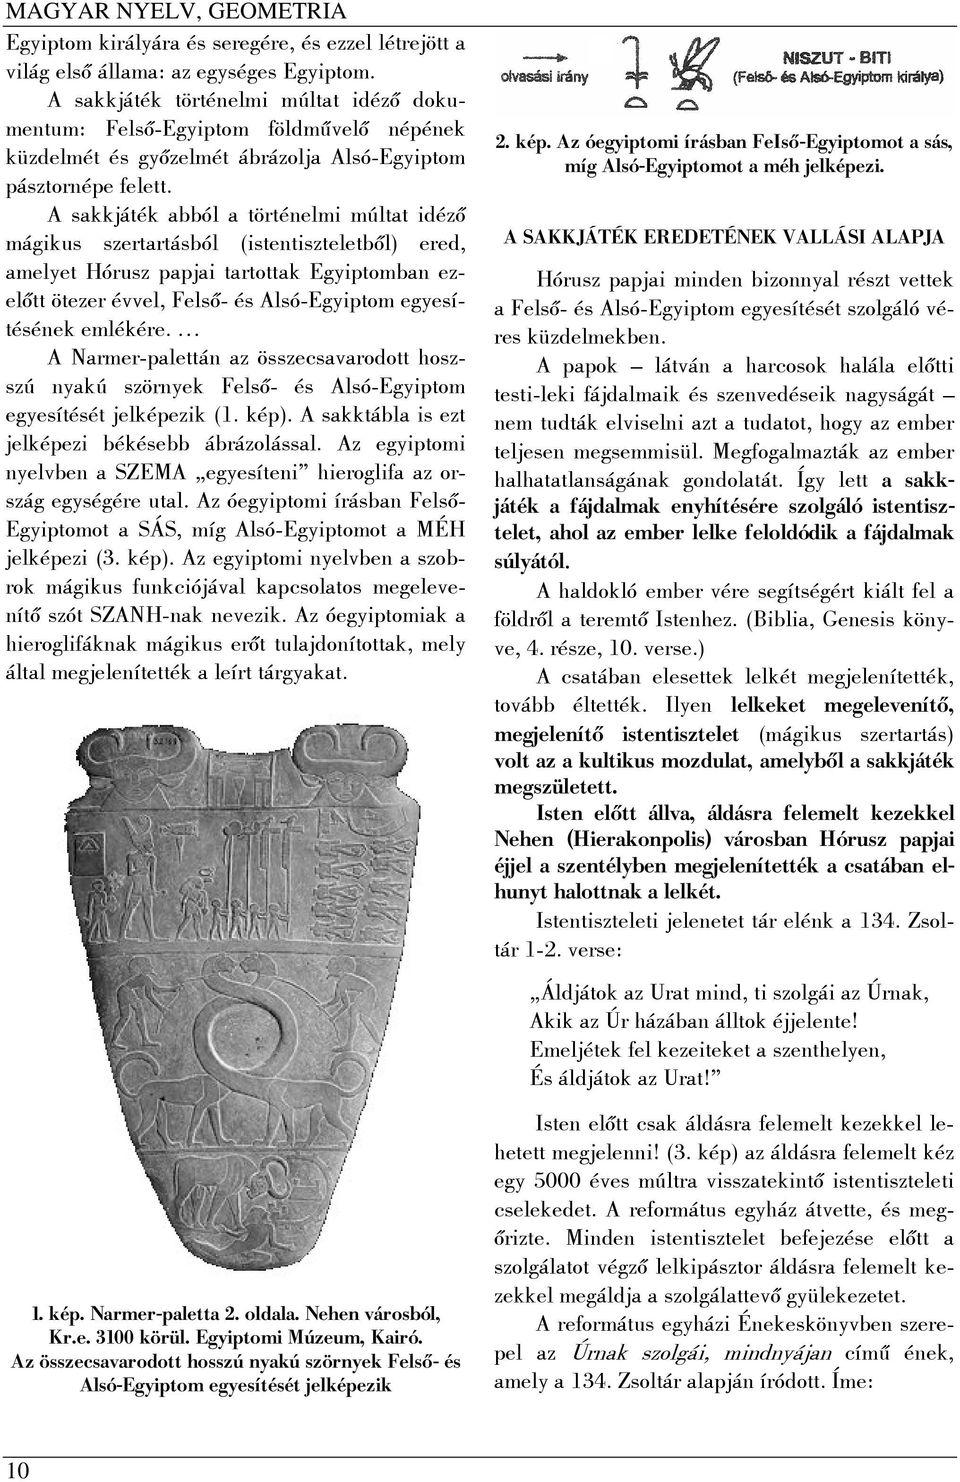 A sakkjáték abból a történelmi múltat idéző mágikus szertartásból (istentiszteletből) ered, amelyet Hórusz papjai tartottak Egyiptomban ezelőtt ötezer évvel, Felső- és Alsó-Egyiptom egyesítésének